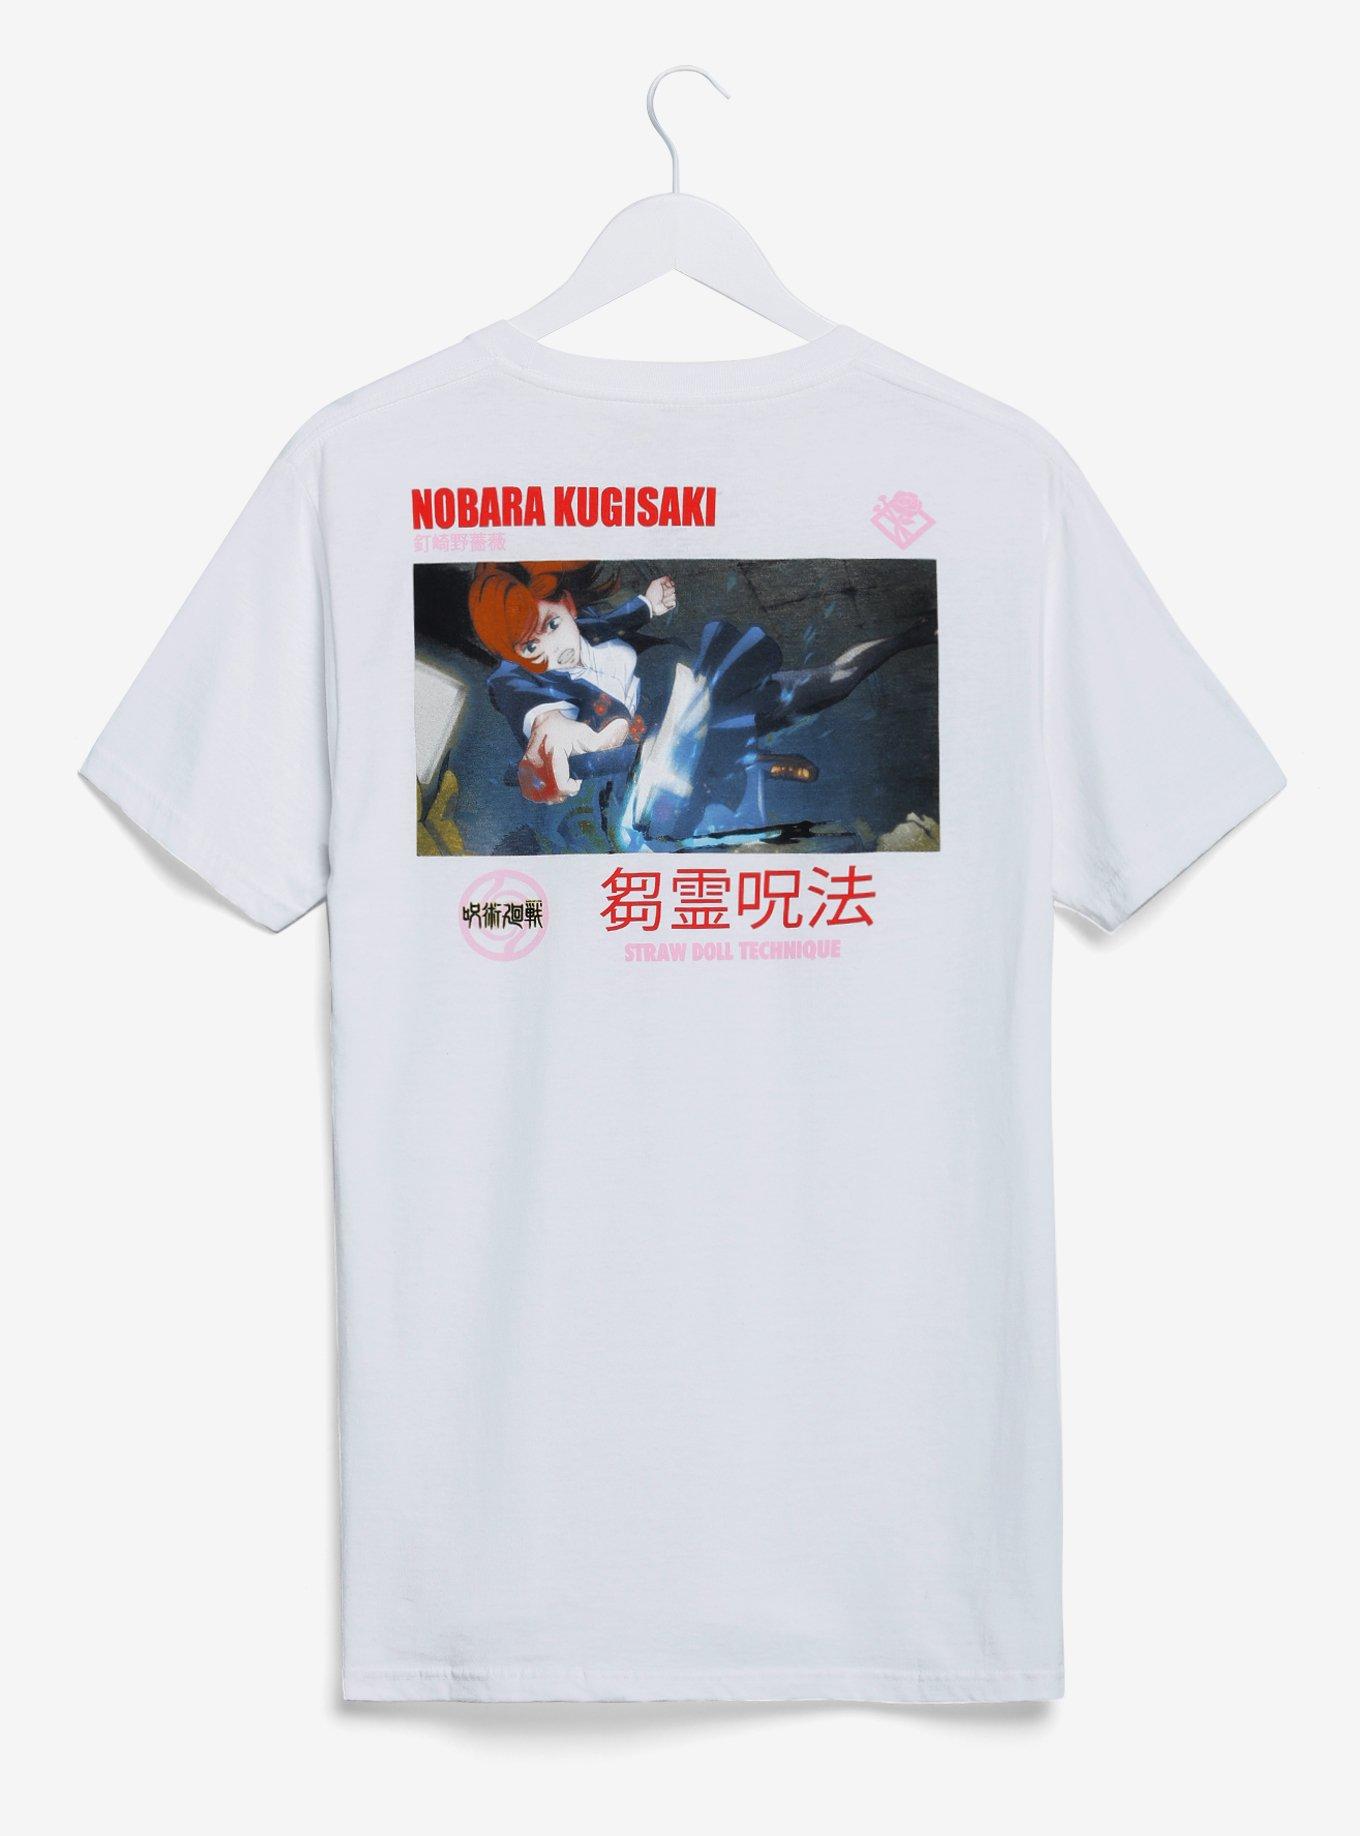 Jujutsu Kaisen Nobara Kugisaki Scene Print T-Shirt - BoxLunch Exclusive, OFF WHITE, alternate